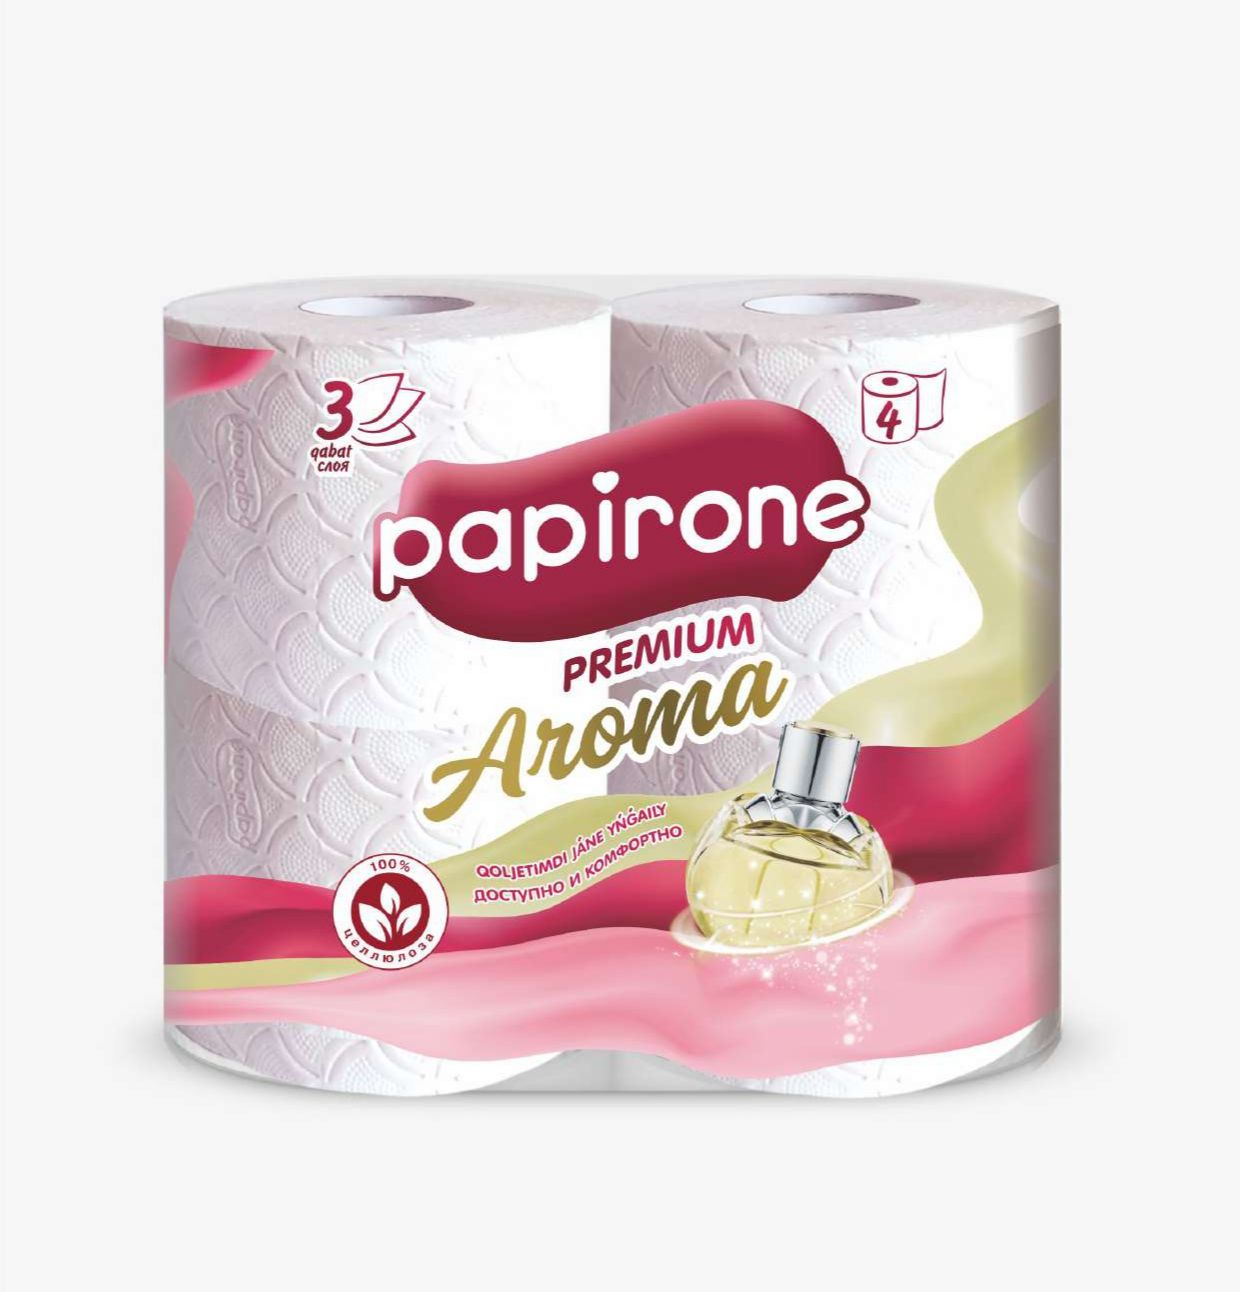 Туалетная бумага Papirone, трехслойная, 4 рулона туалетная бумага soffione premium toscana lavender трехслойная 4 рулона